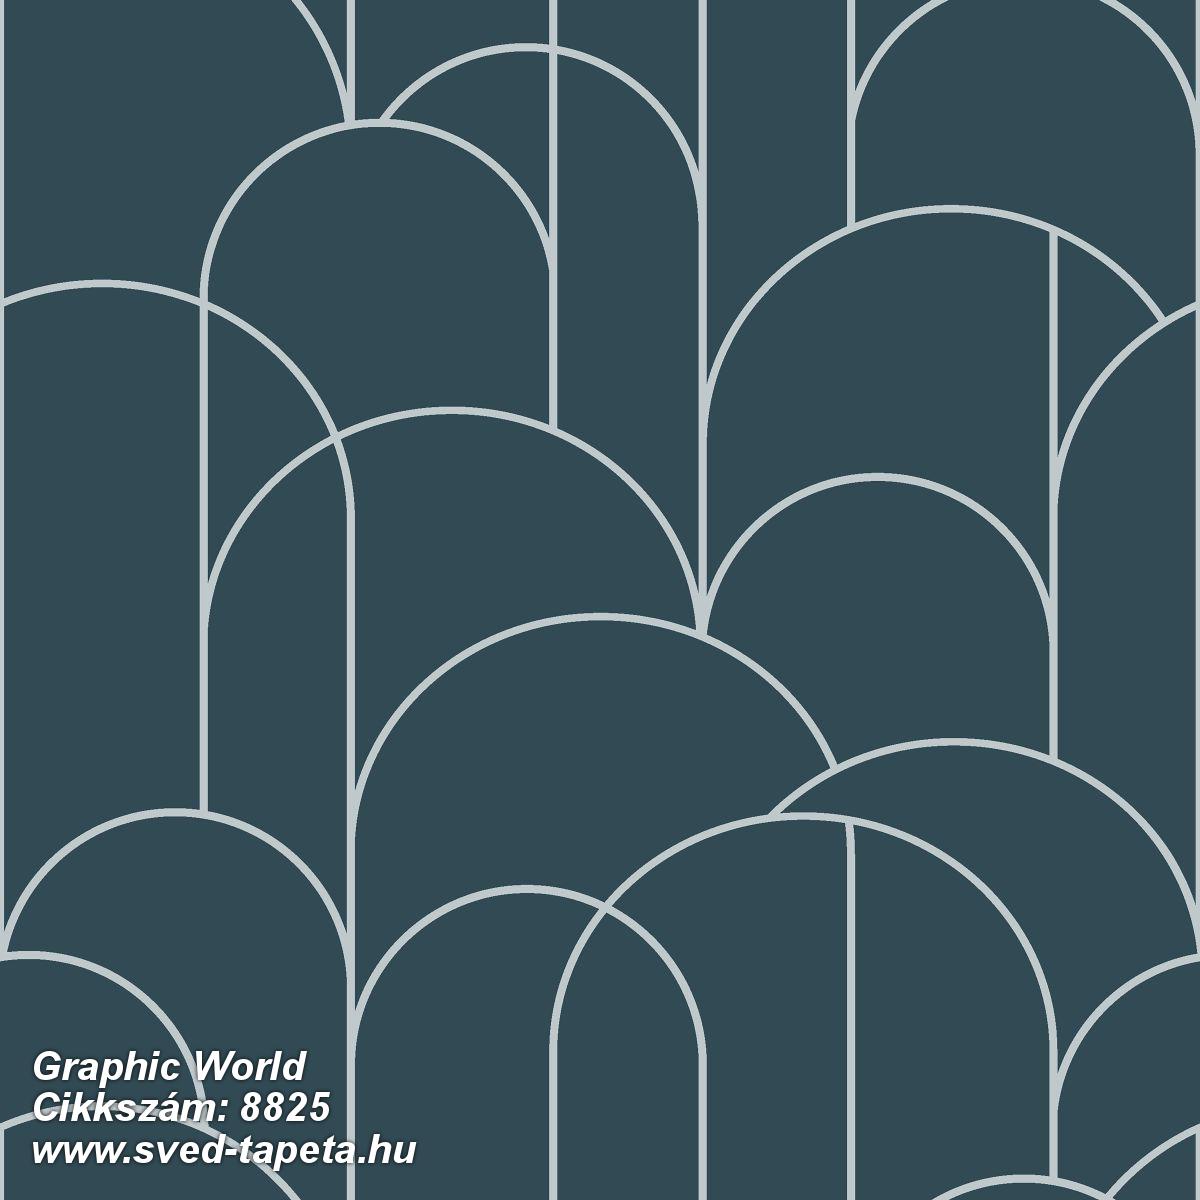 Graphic World 8825 cikkszámú svéd ECOgyártmányú designtapéta